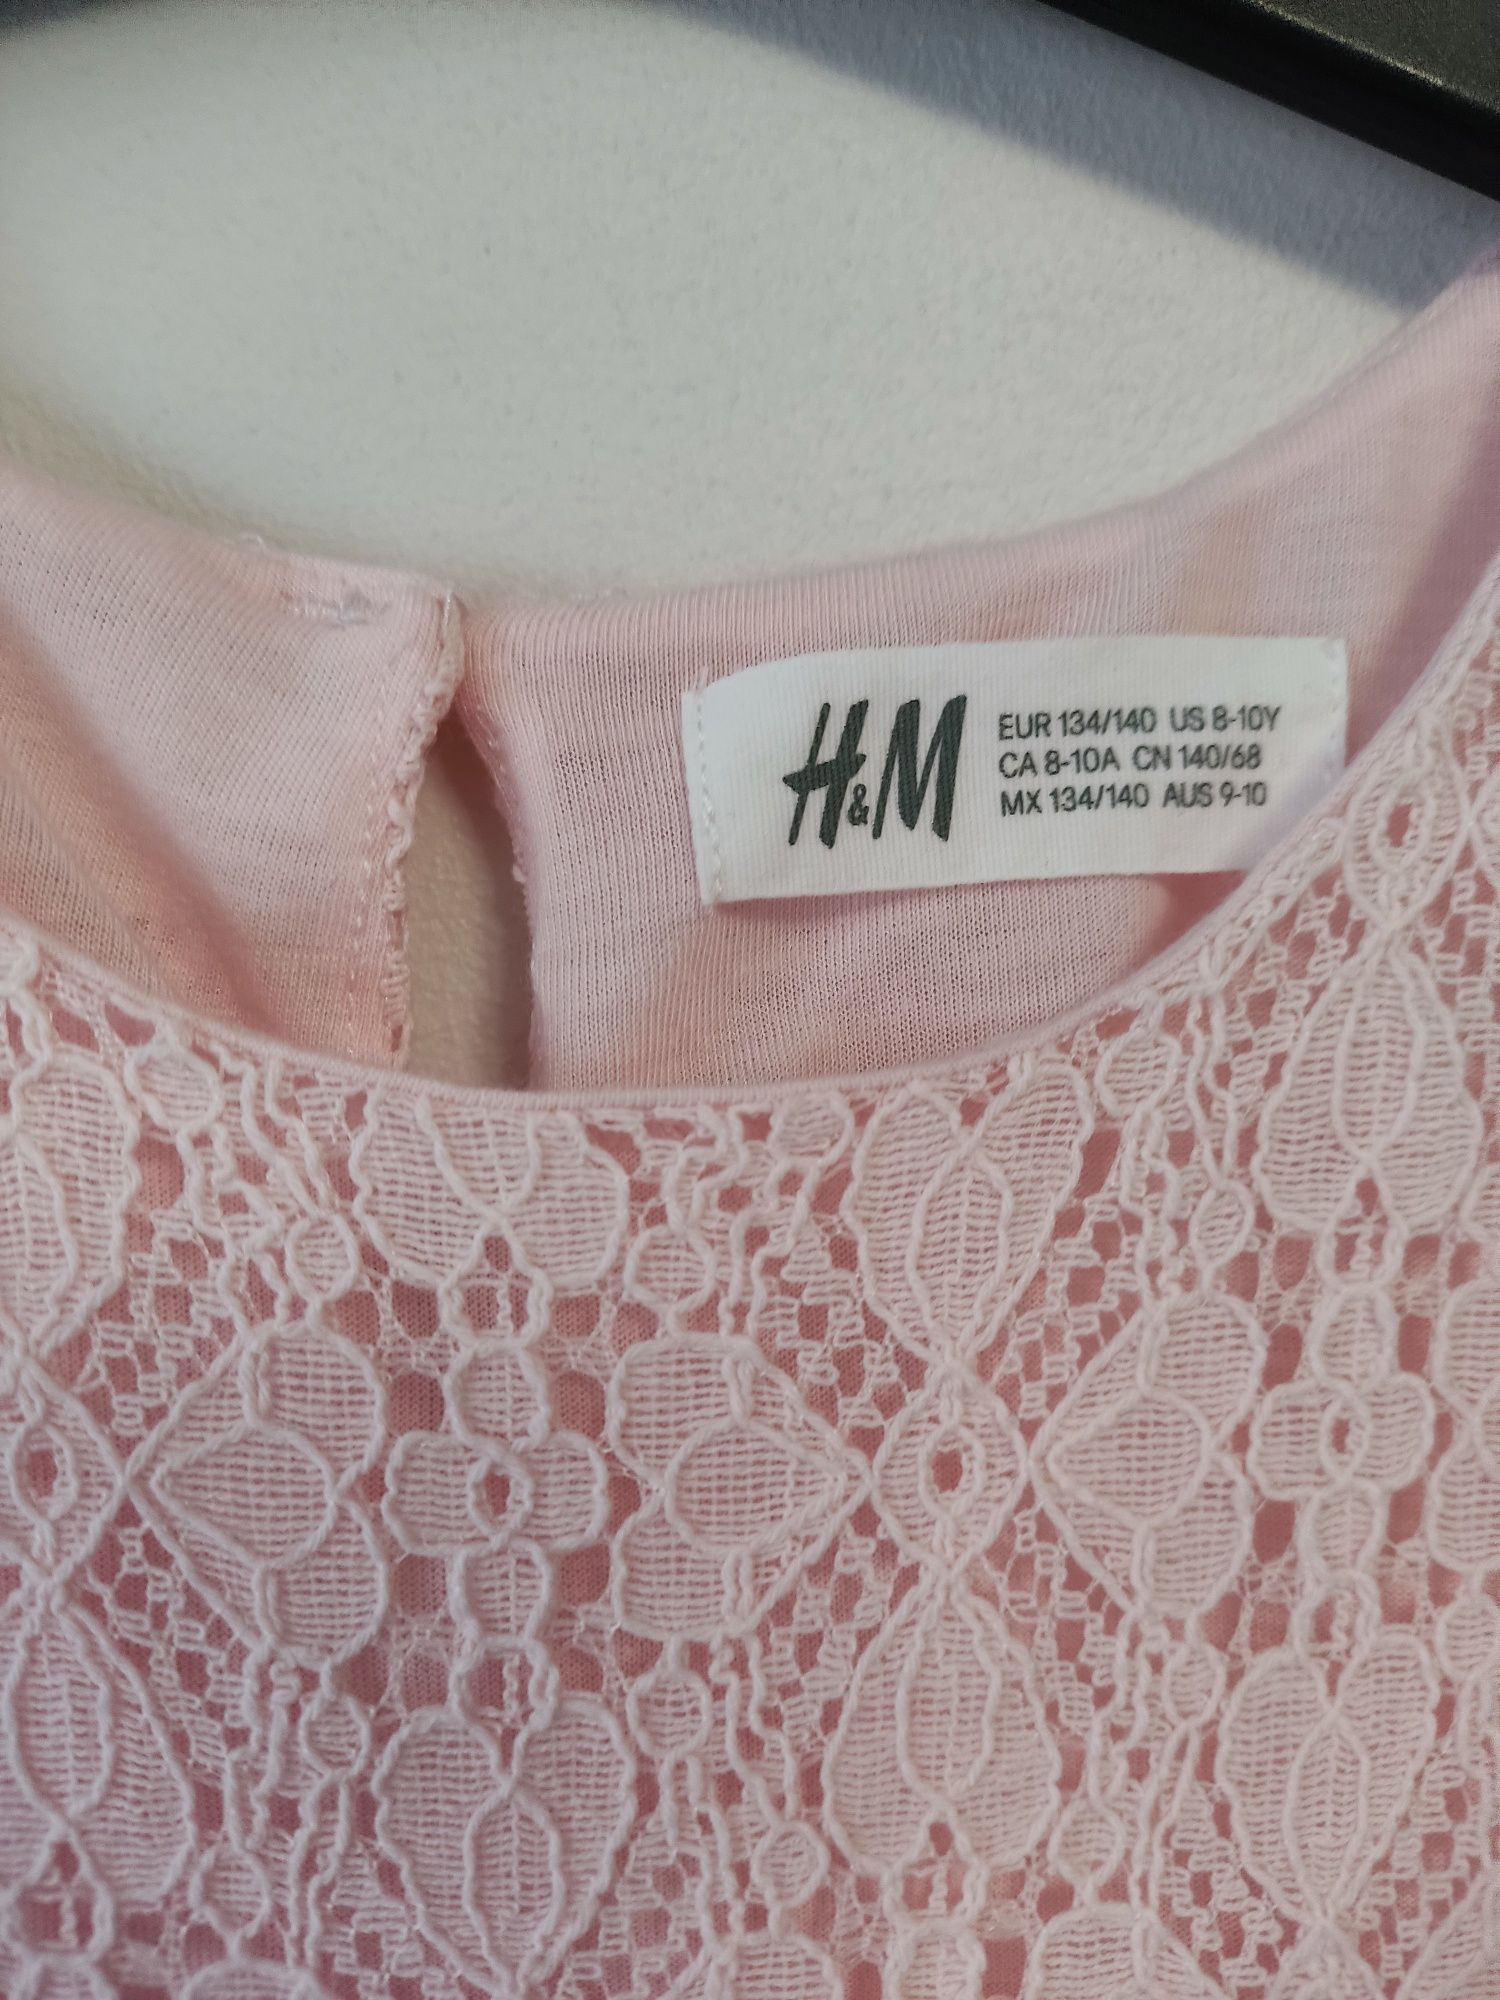 Koronkowa sukienka H&M,134/140, różowa. Komunia,wesele,urodziny.